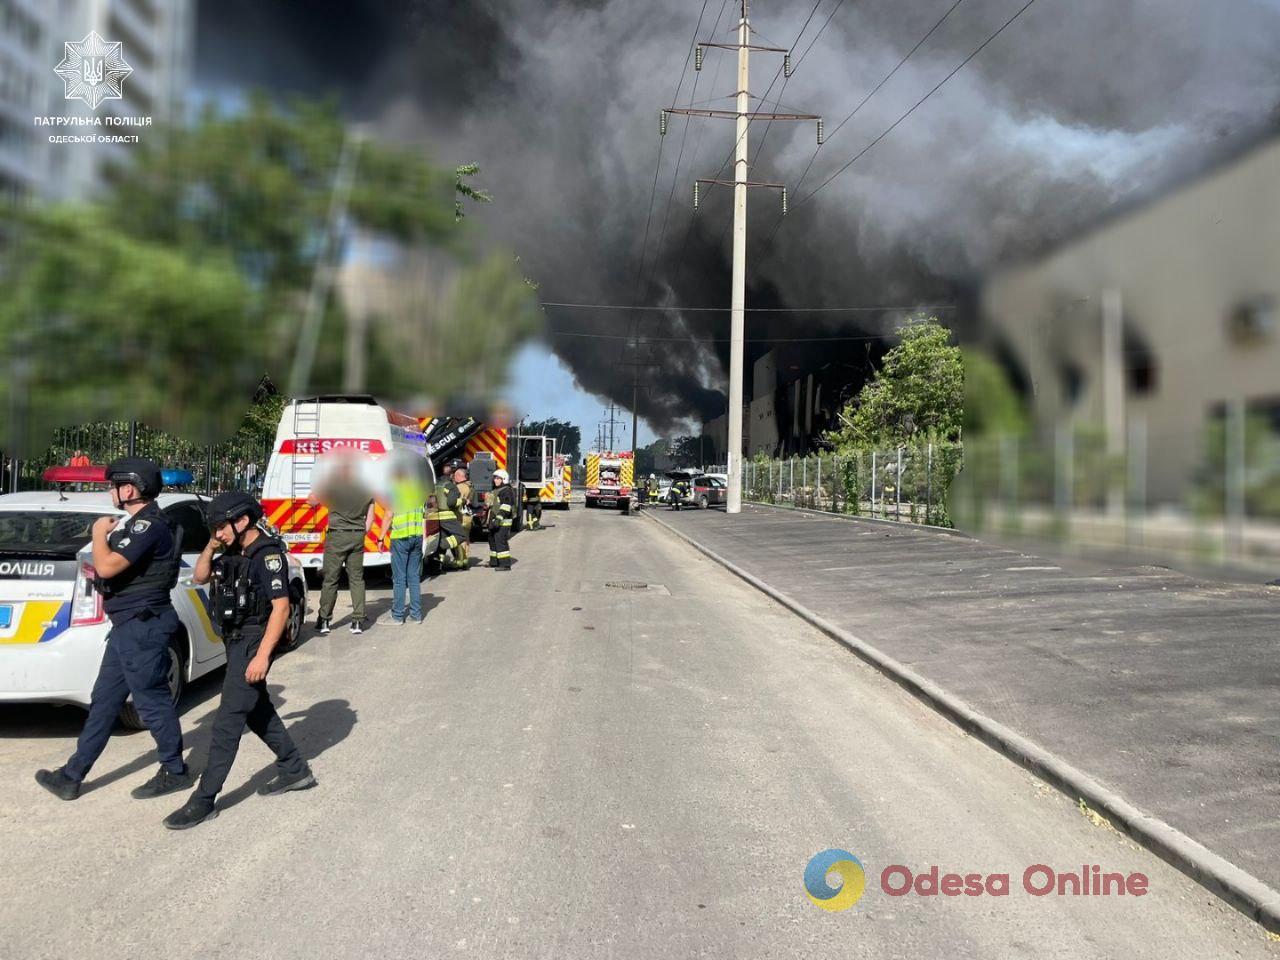 Утренняя атака по Одессе: россияне попали по гражданской инфраструктуре, есть пострадавшие (обновлено)